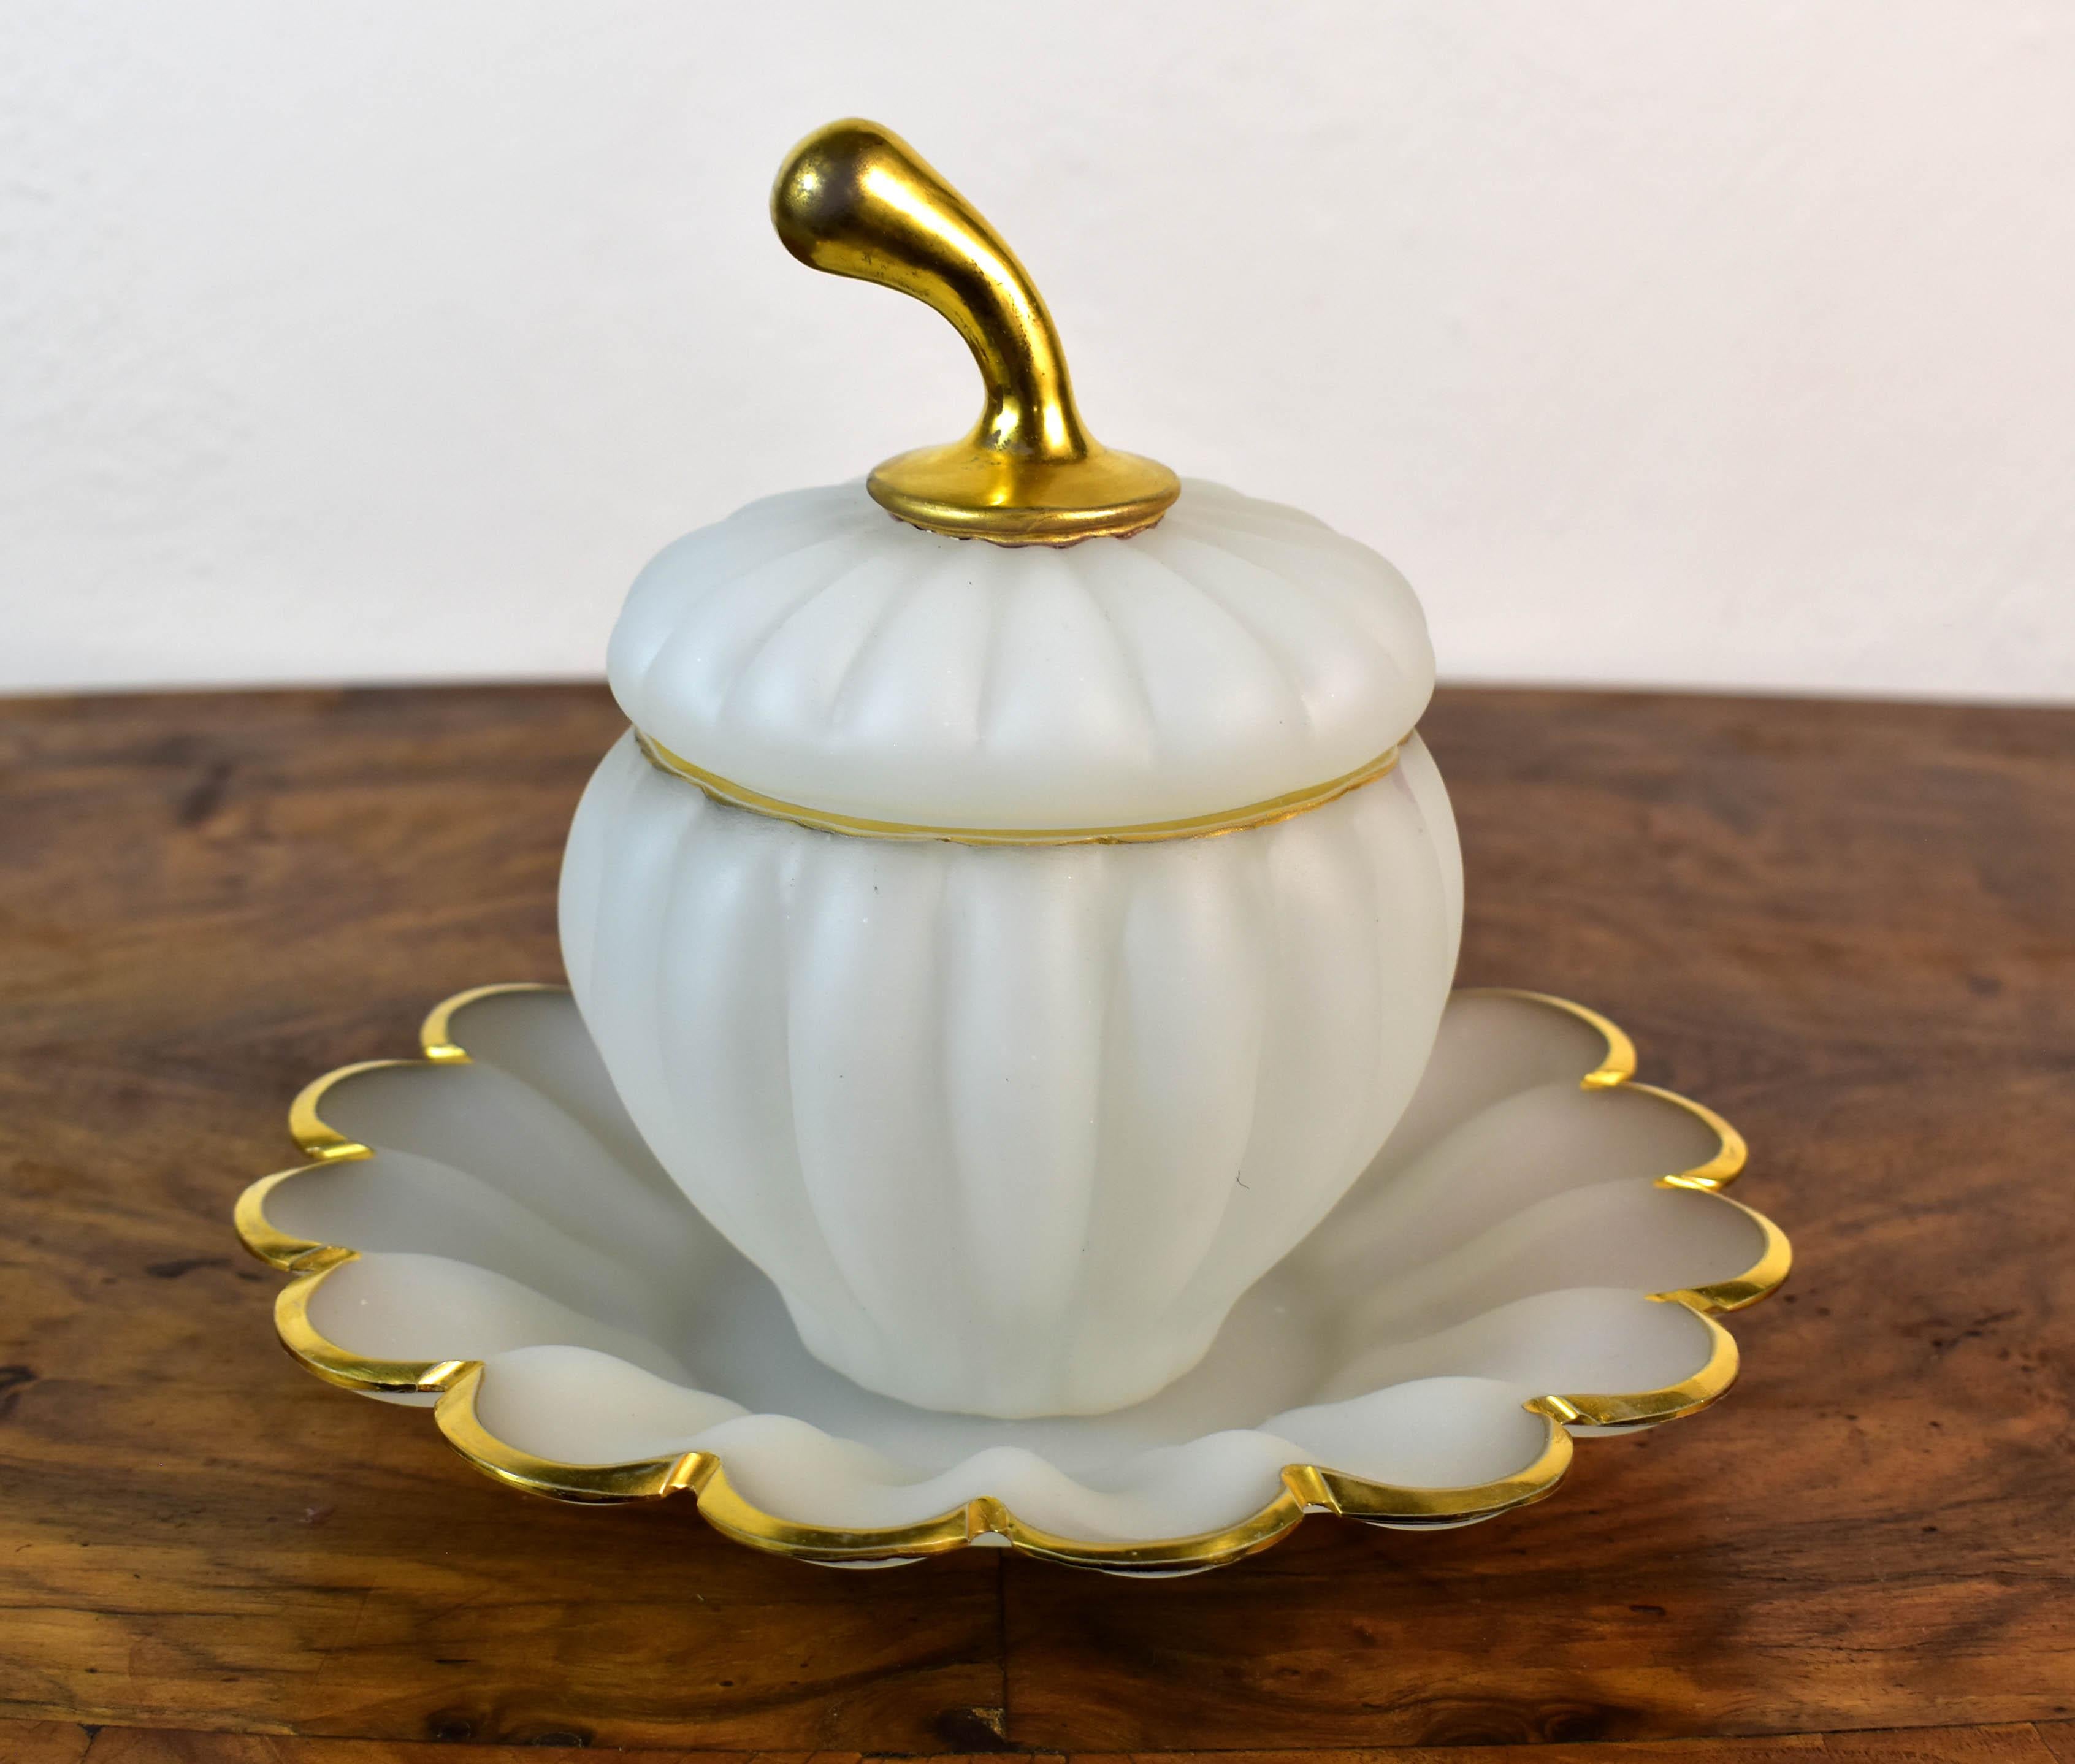 Une belle et très intéressante jarre avec un plateau en verre opalin. Le pot en forme de citrouille est en opaline blanche avec un éclat d'or, et l'assiette est également complétée par une peinture dorée. Il s'agit d'une forme intéressante et